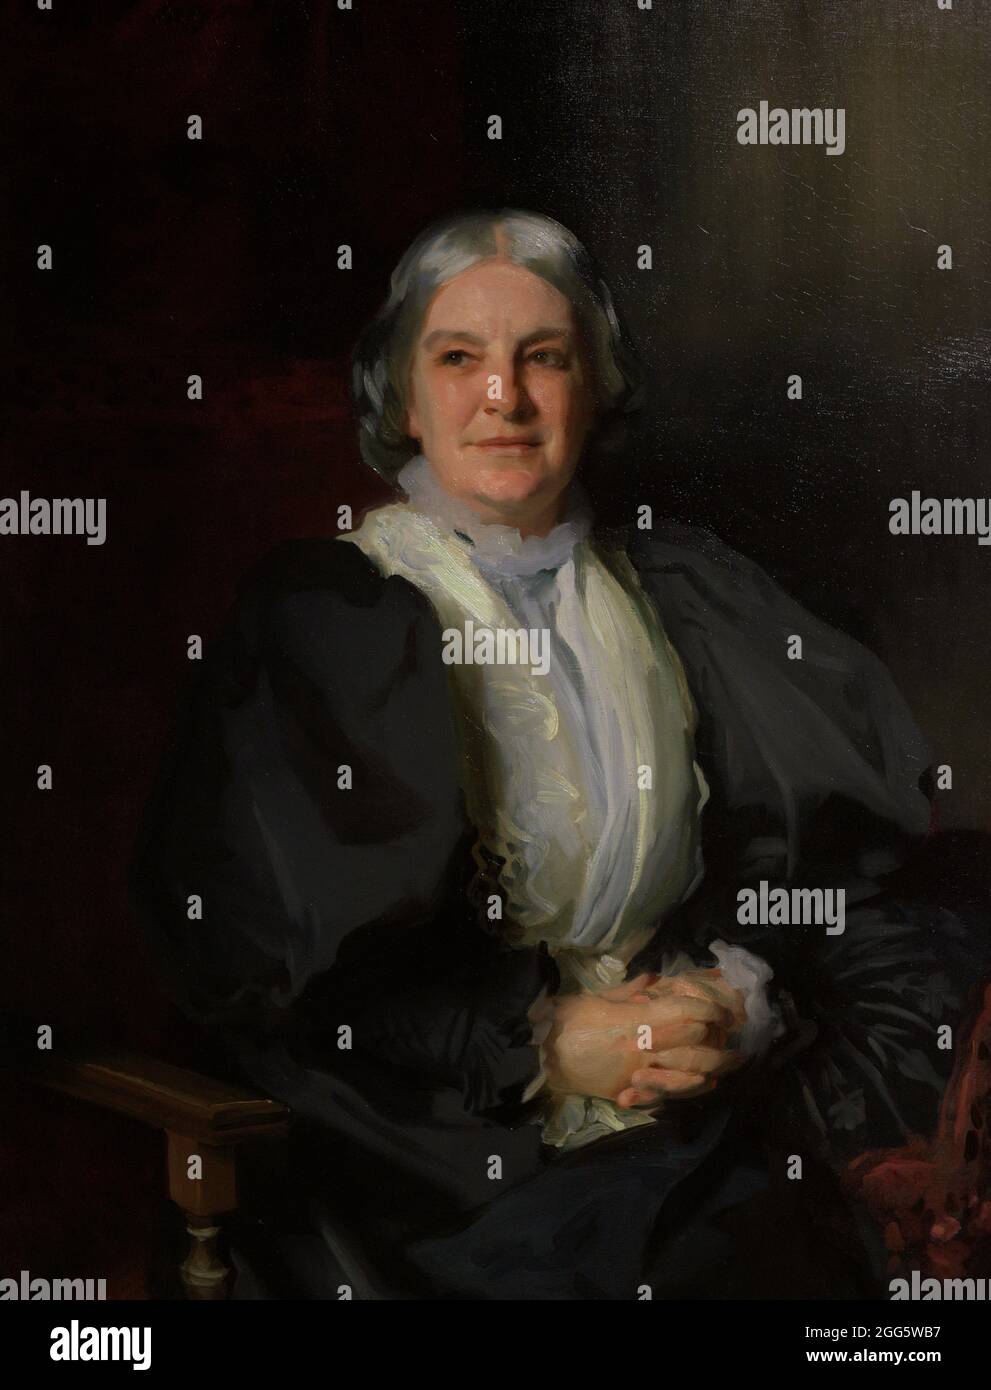 Ottavia Hill (1838-1912). Reformateur social anglais. Portrait de John Singer Sargent (1856-1925). Huile sur toile (102 x 82,2 cm), 1898. Galerie nationale de portraits. Londres, Angleterre, Royaume-Uni. Banque D'Images